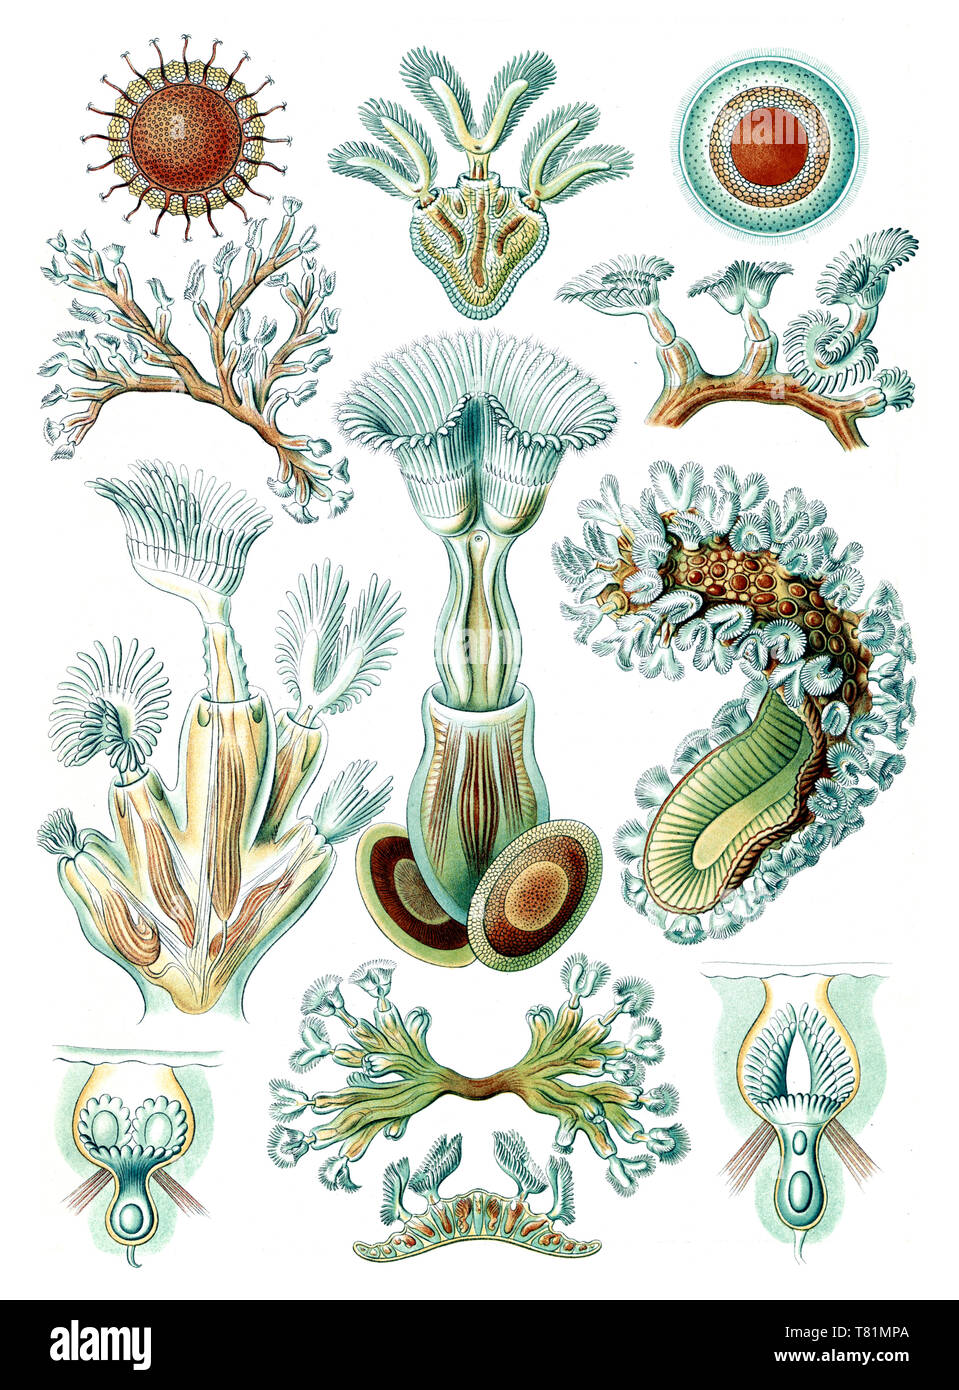 Ernst Haeckel, Bryozoa, wirbellose Wassertiere Stockfoto